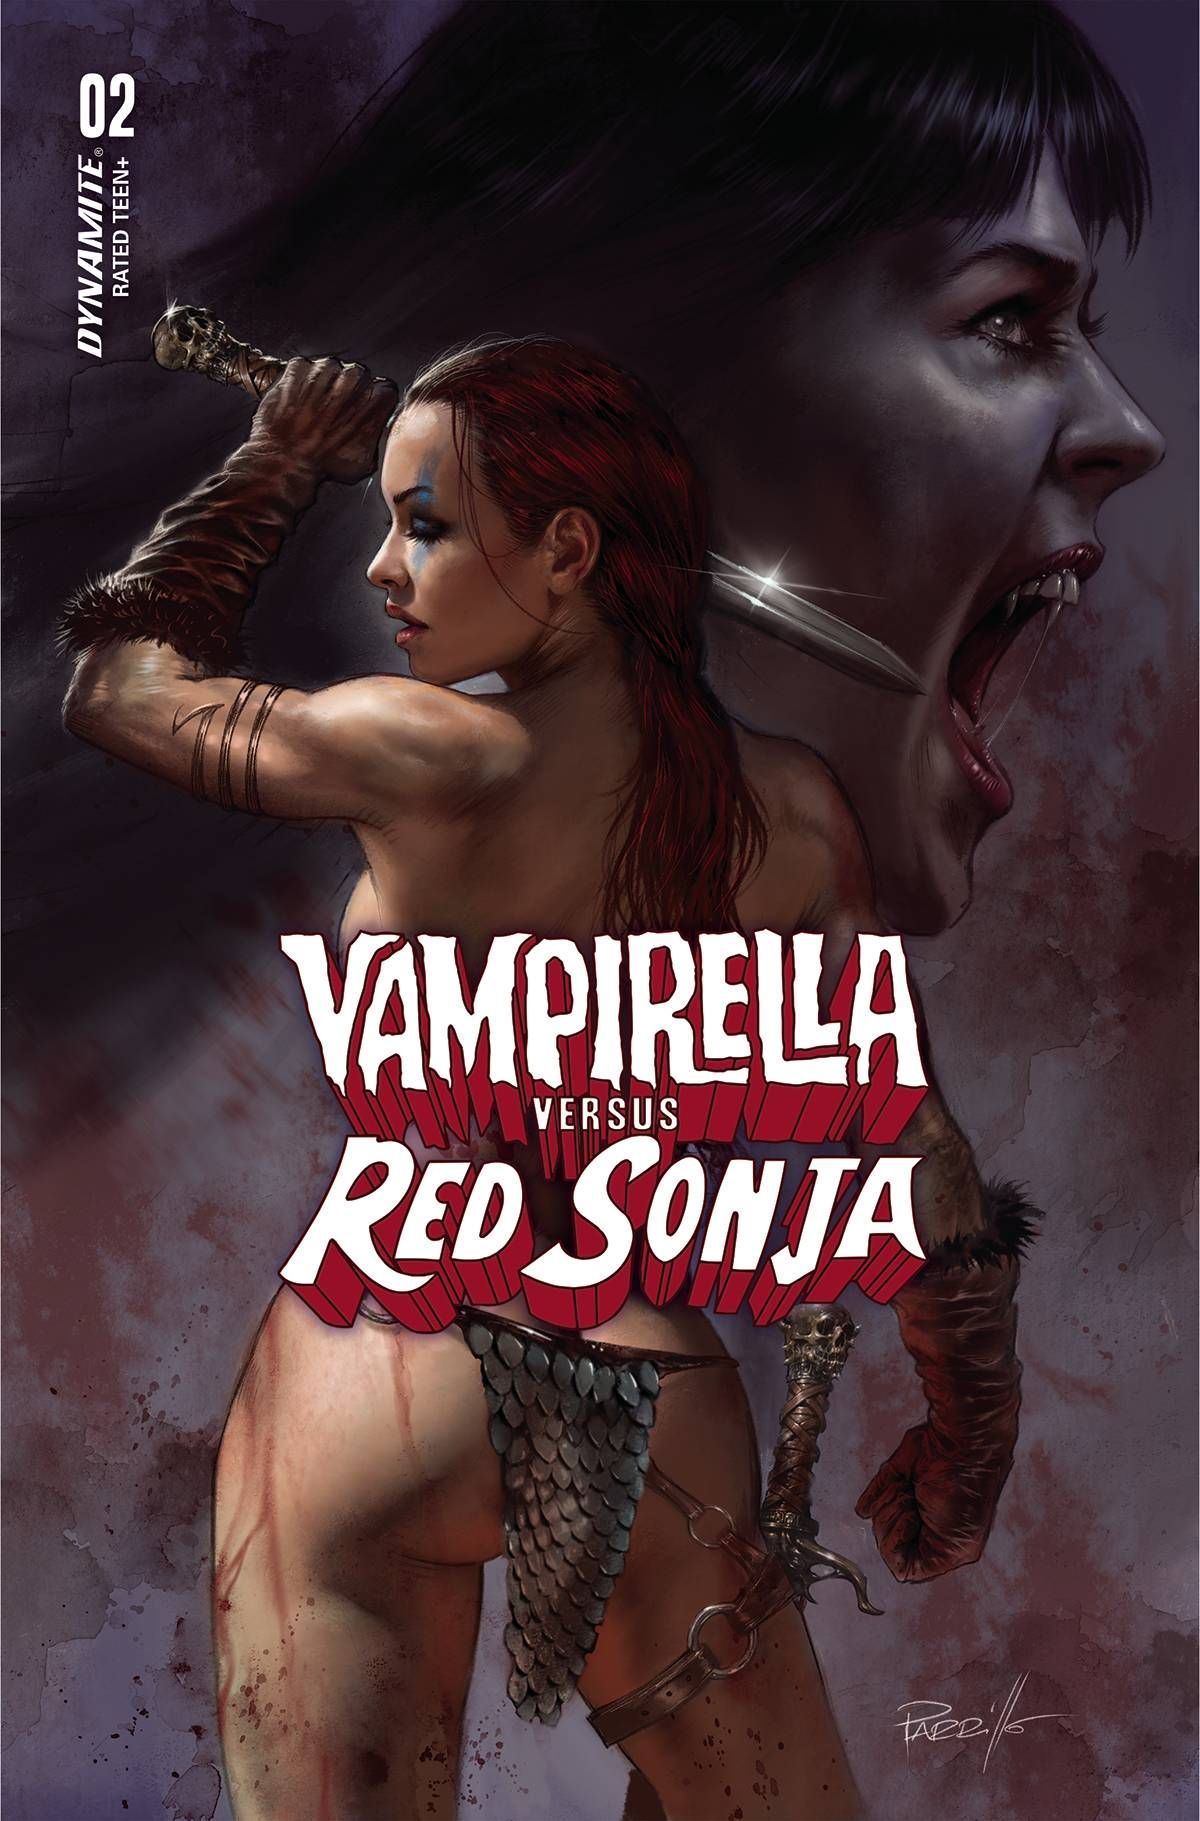 Vampirella vs. Red Sonja #2 Comic